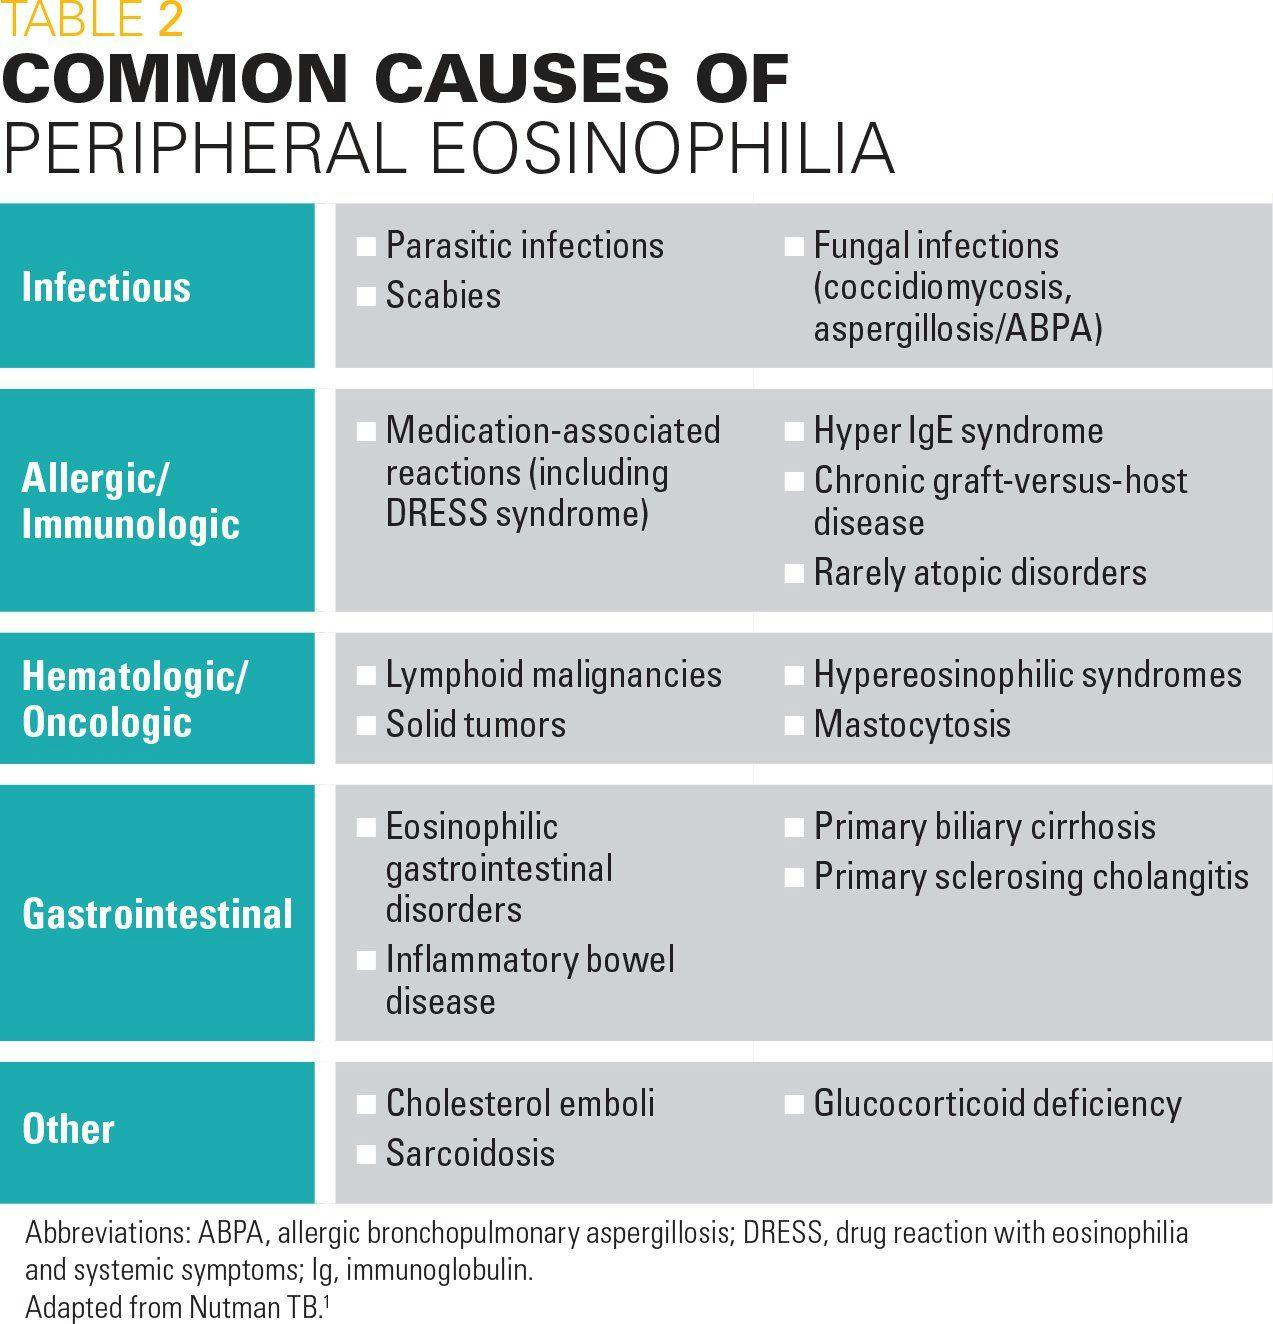 Common causes of peripheral eosinophilia